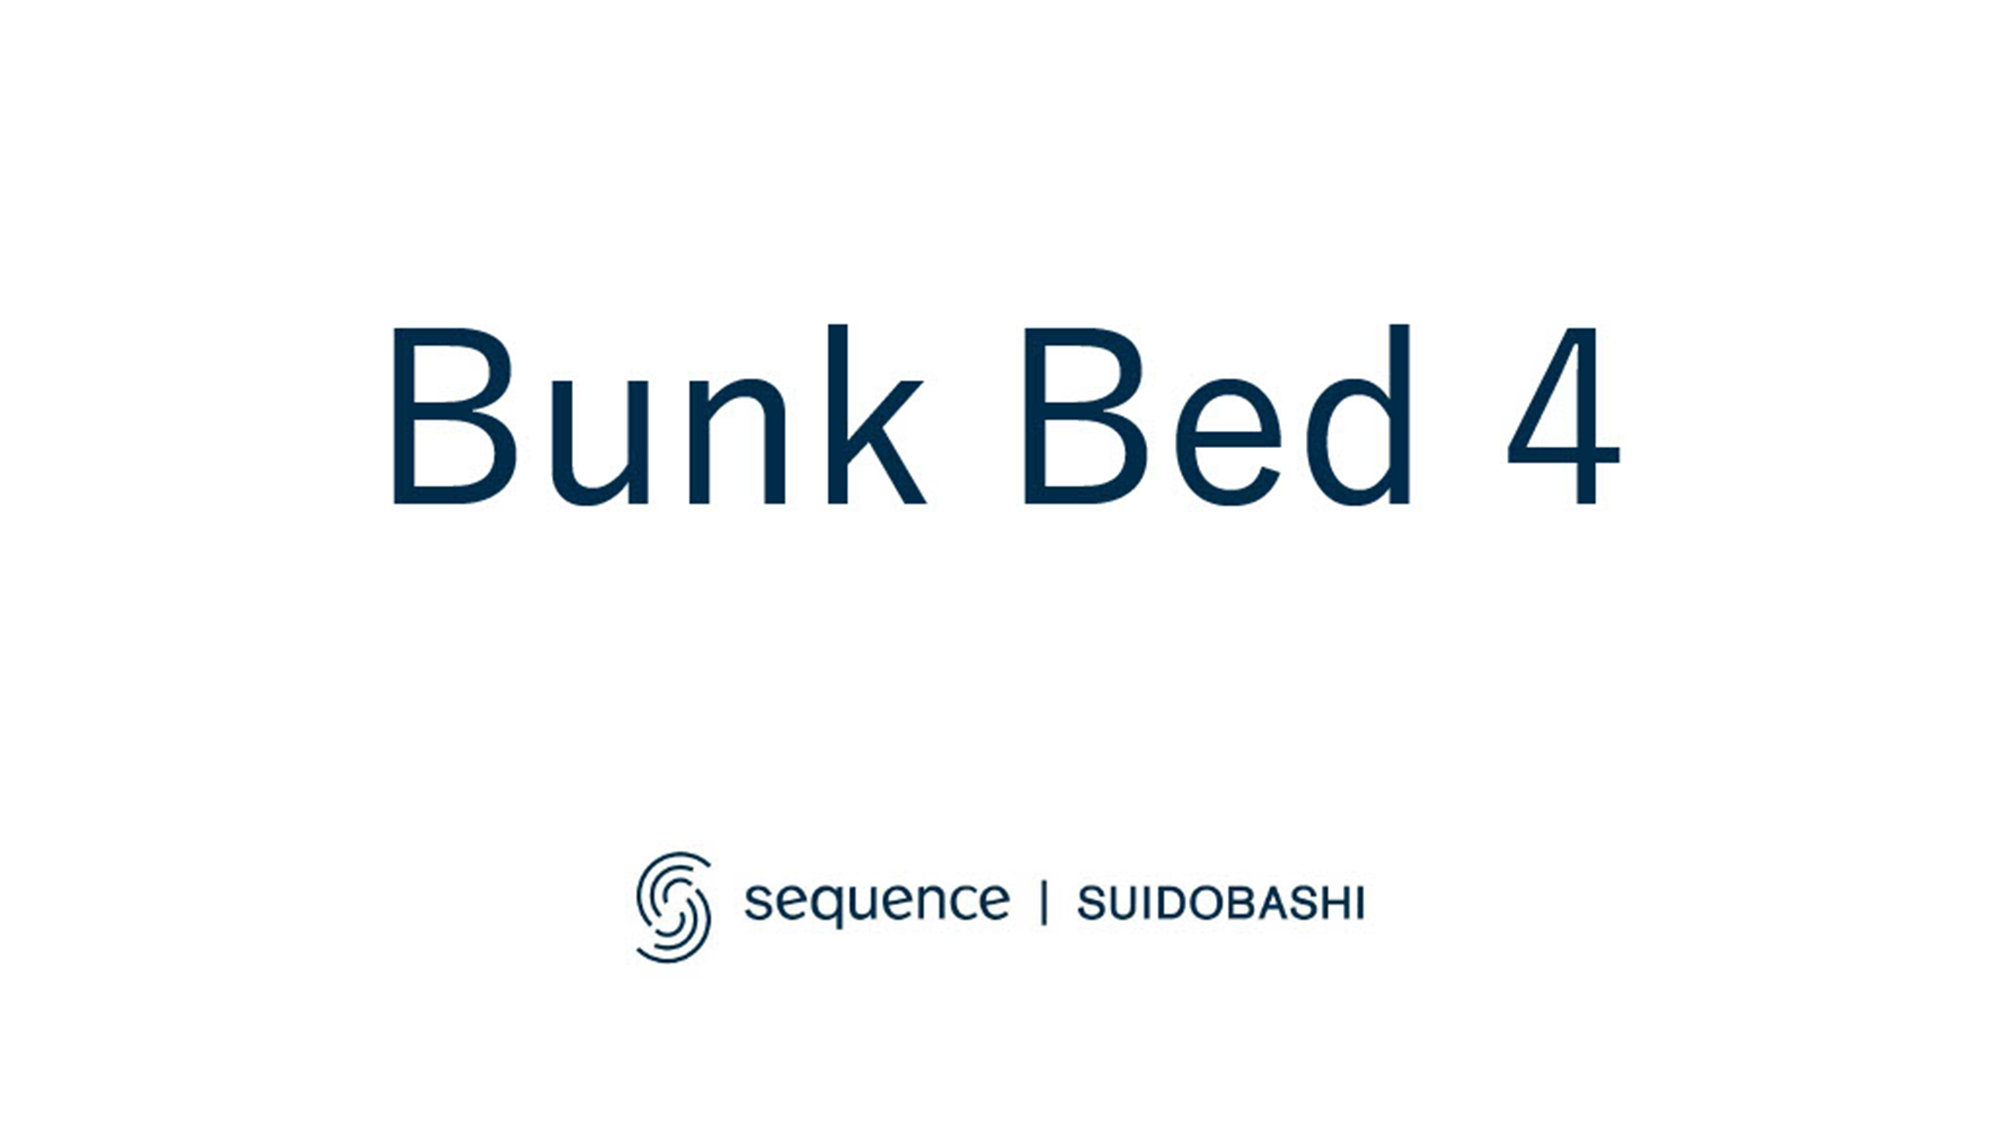 Bunk Bed 4